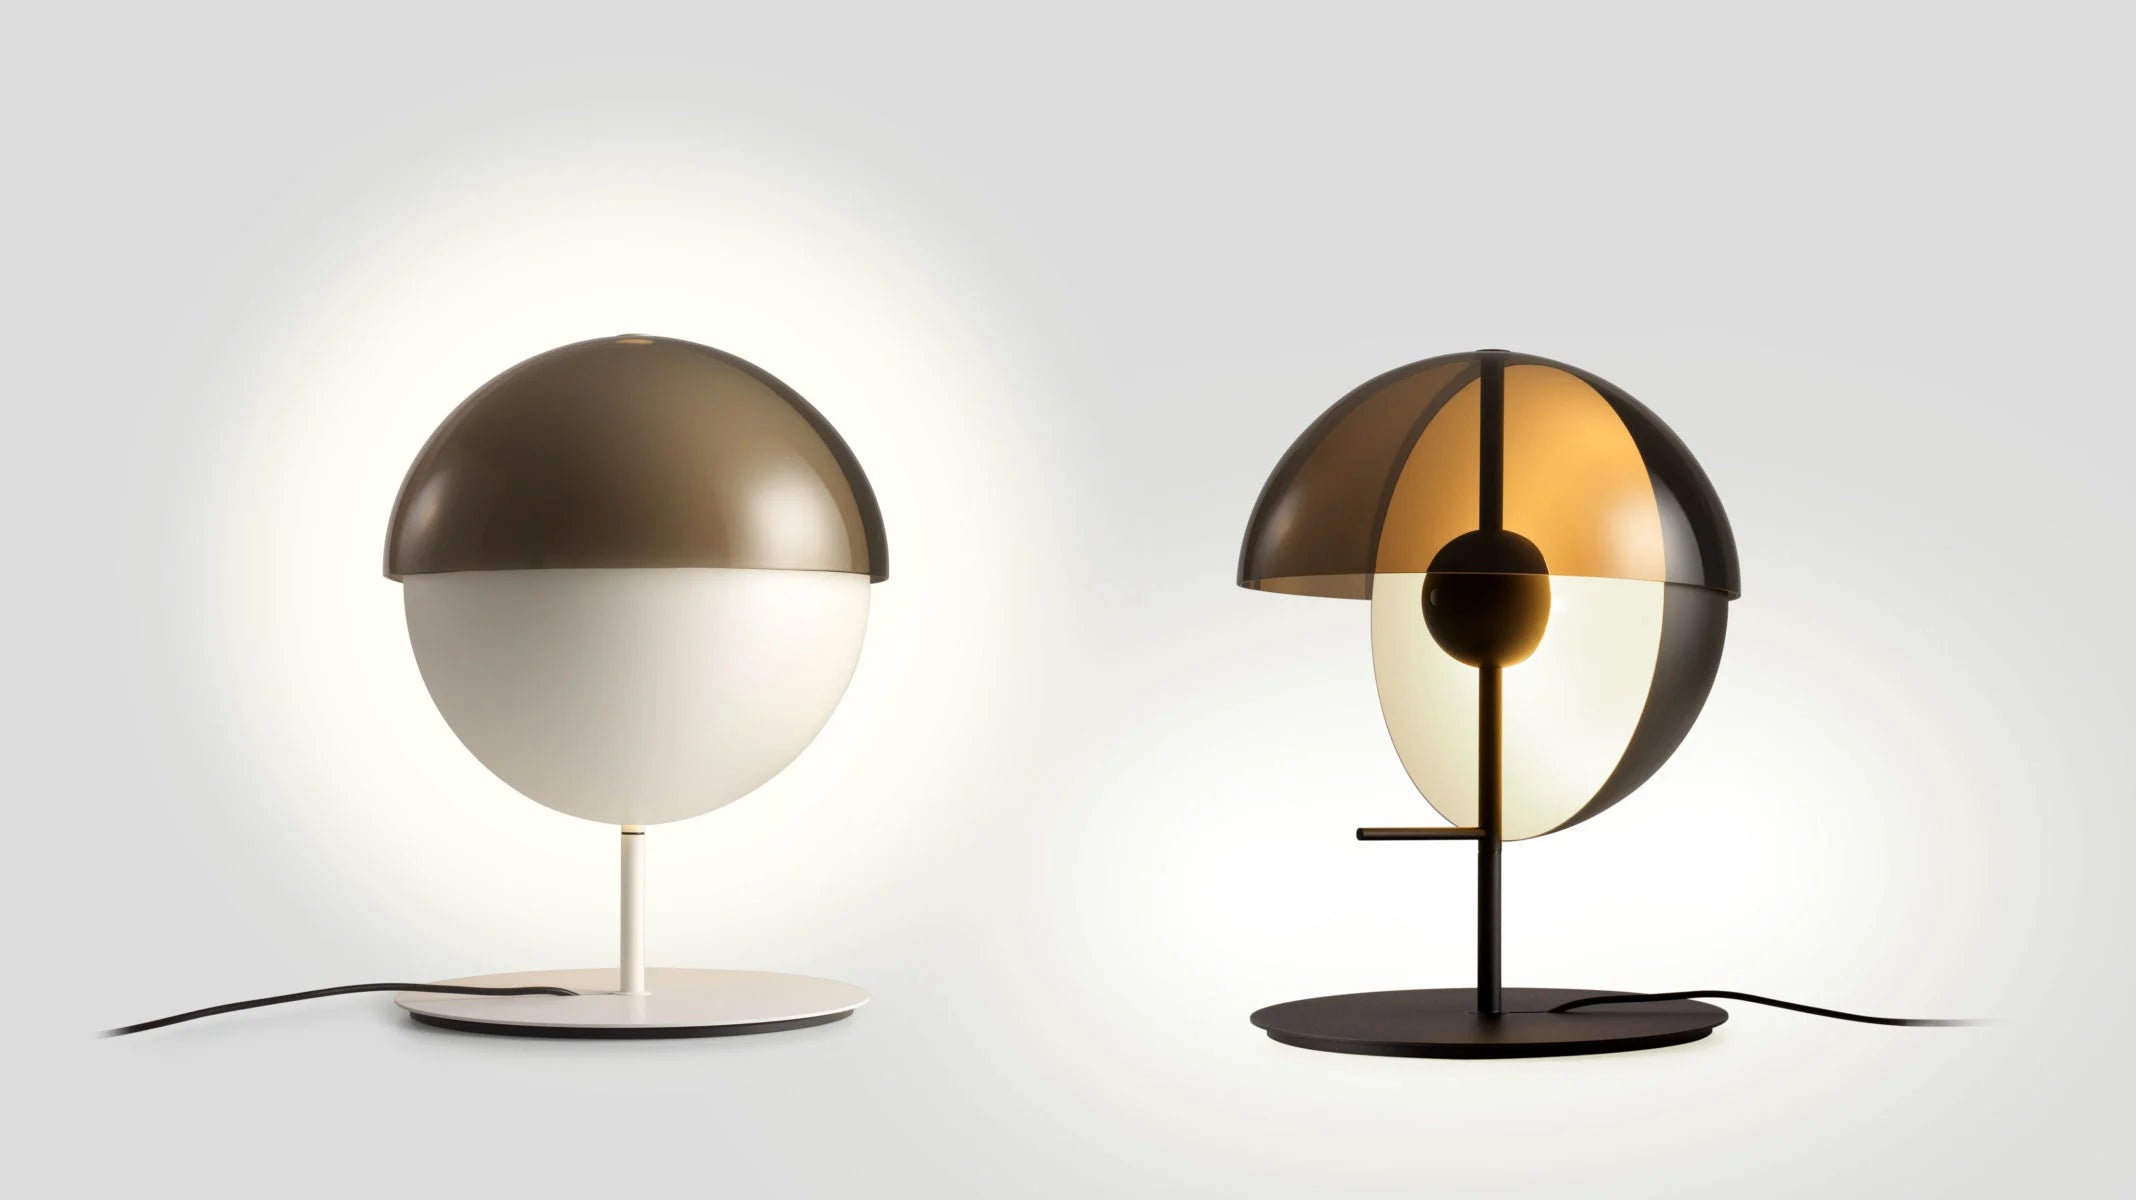 Lampa stołowa THEIA czarny Marset    Eye on Design